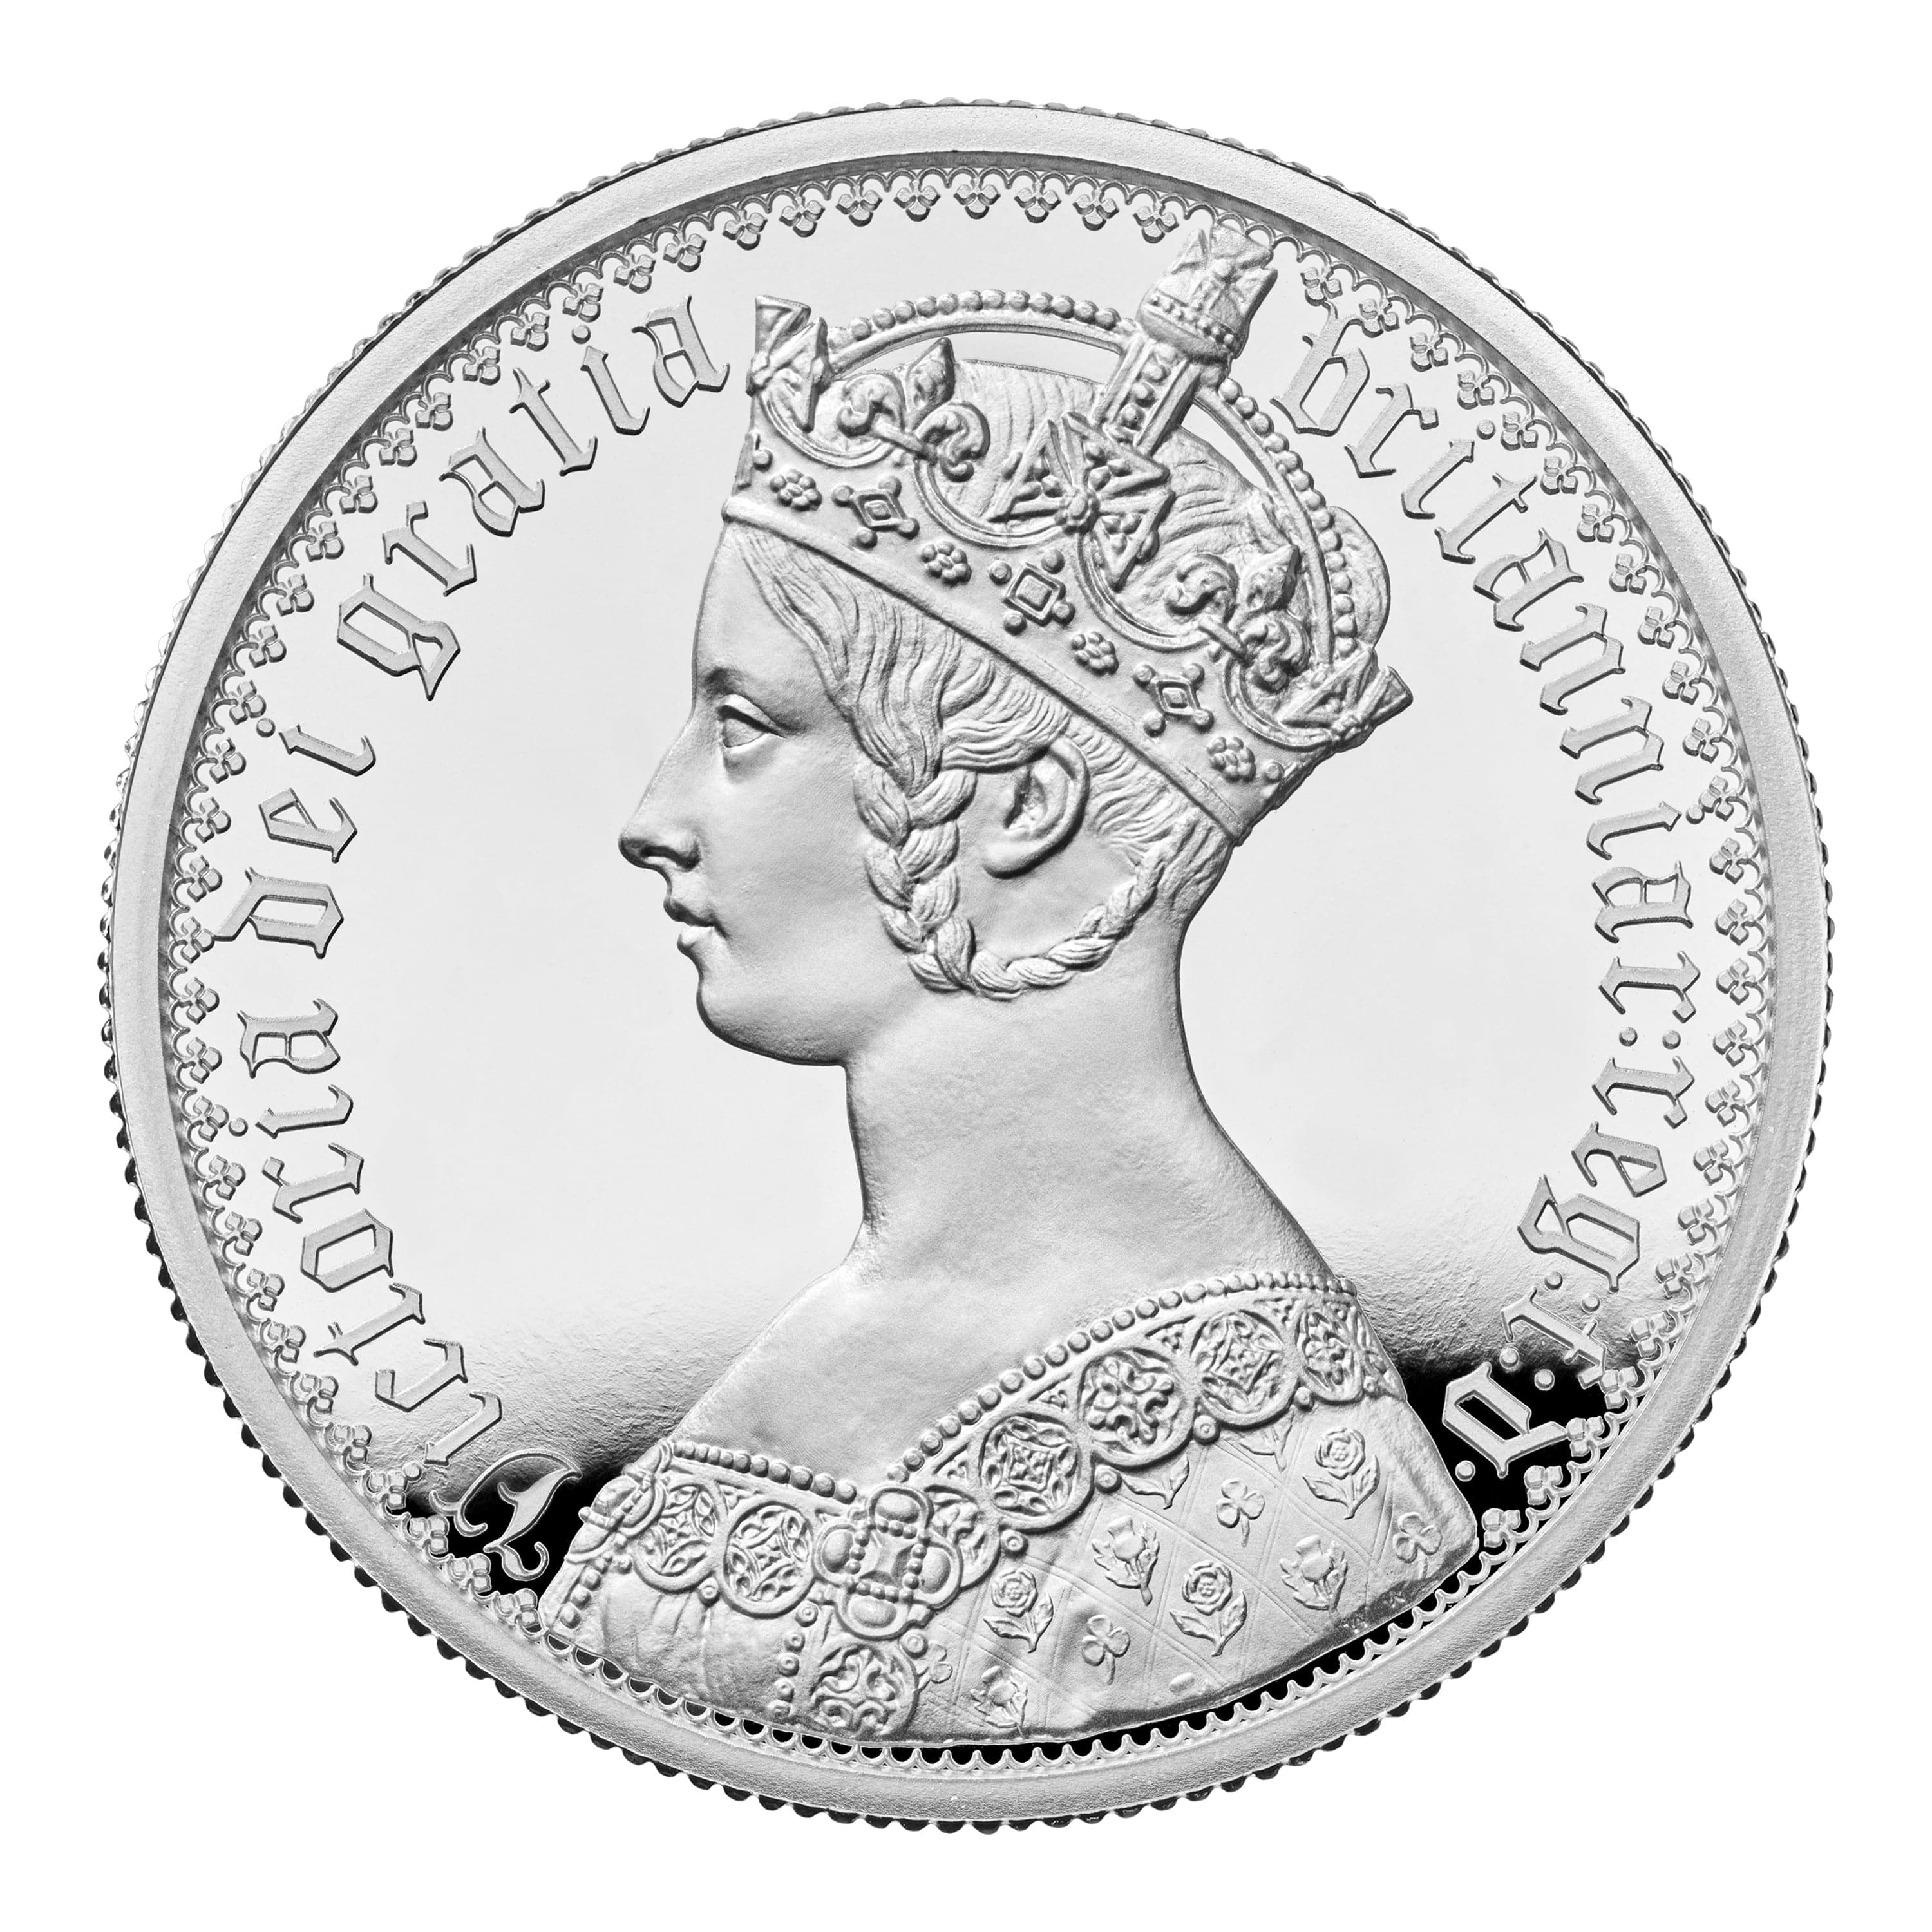 2021 ゴシッククラウン 2オンス銀貨 ヴィクトリア女王 アンデシモ PF69